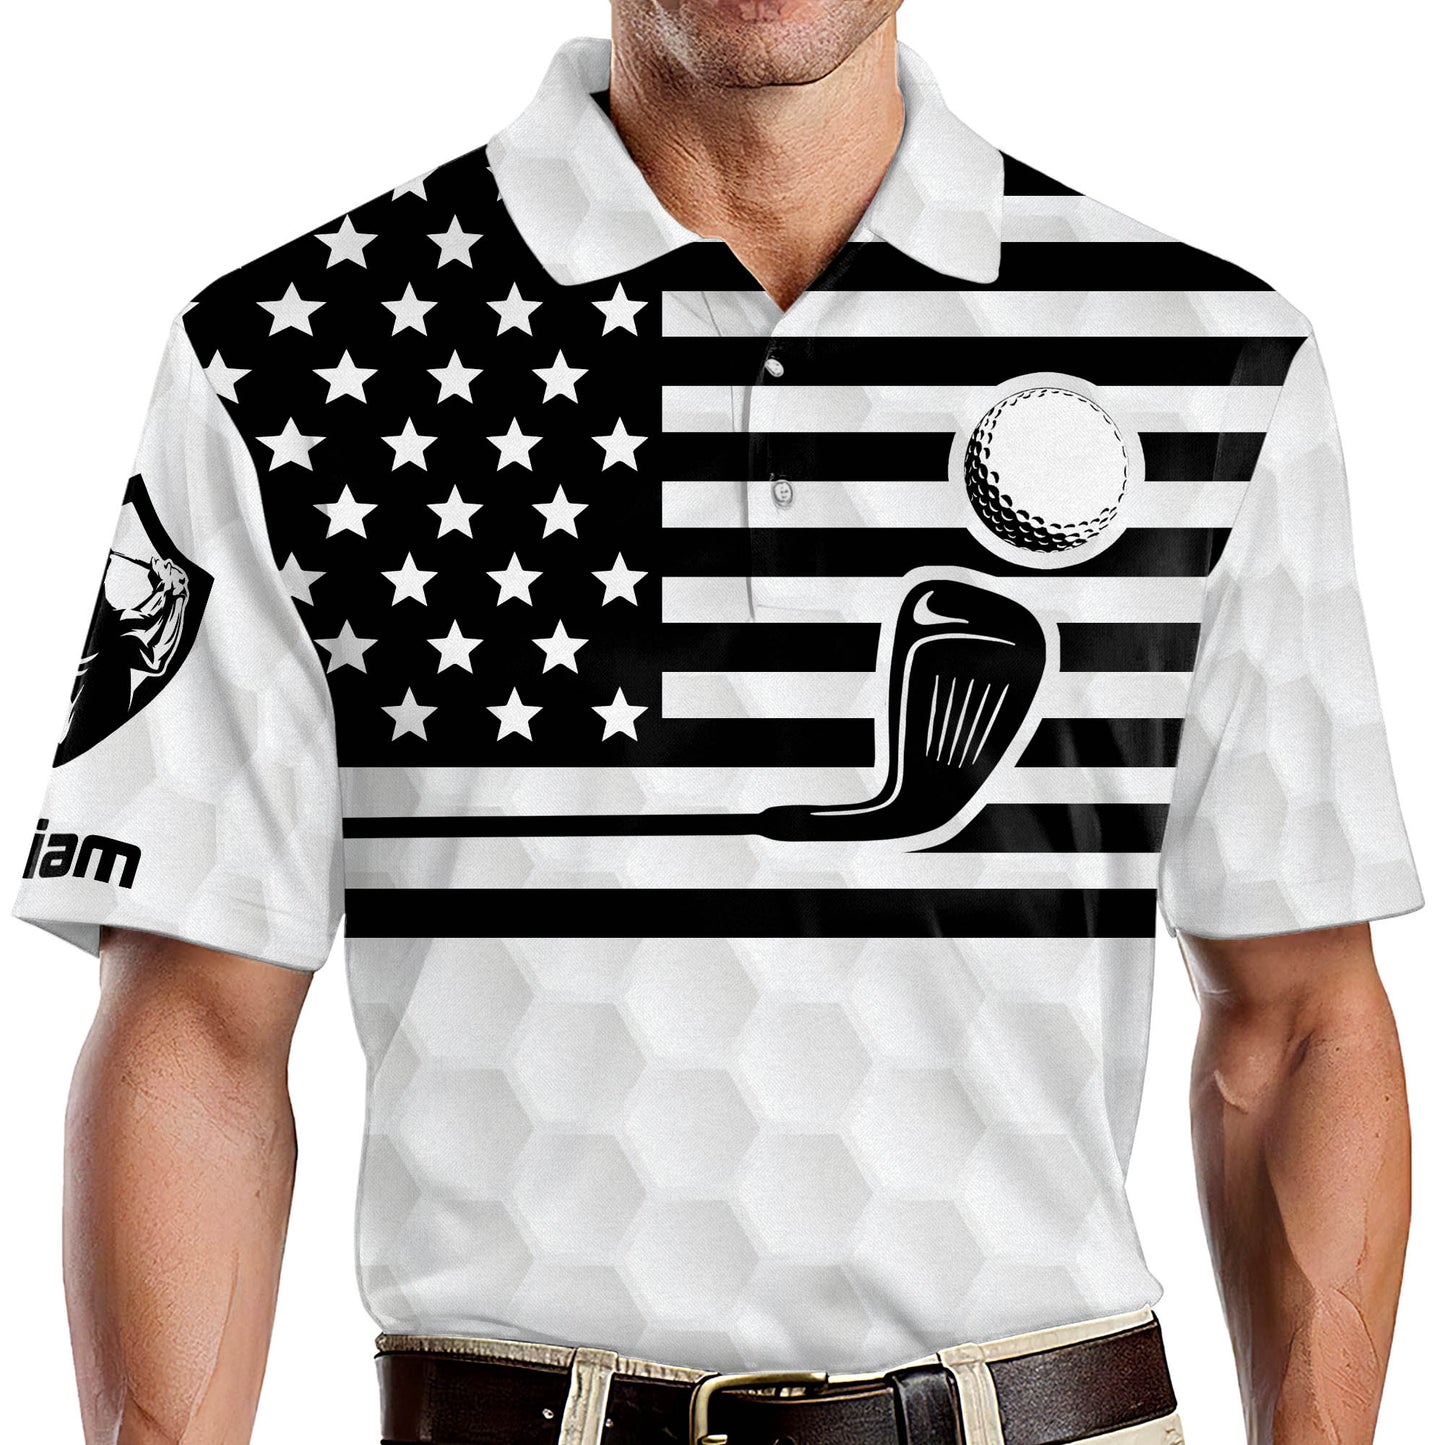 Meet Me At The 19th Hole Golf Polo Shirt GM0108